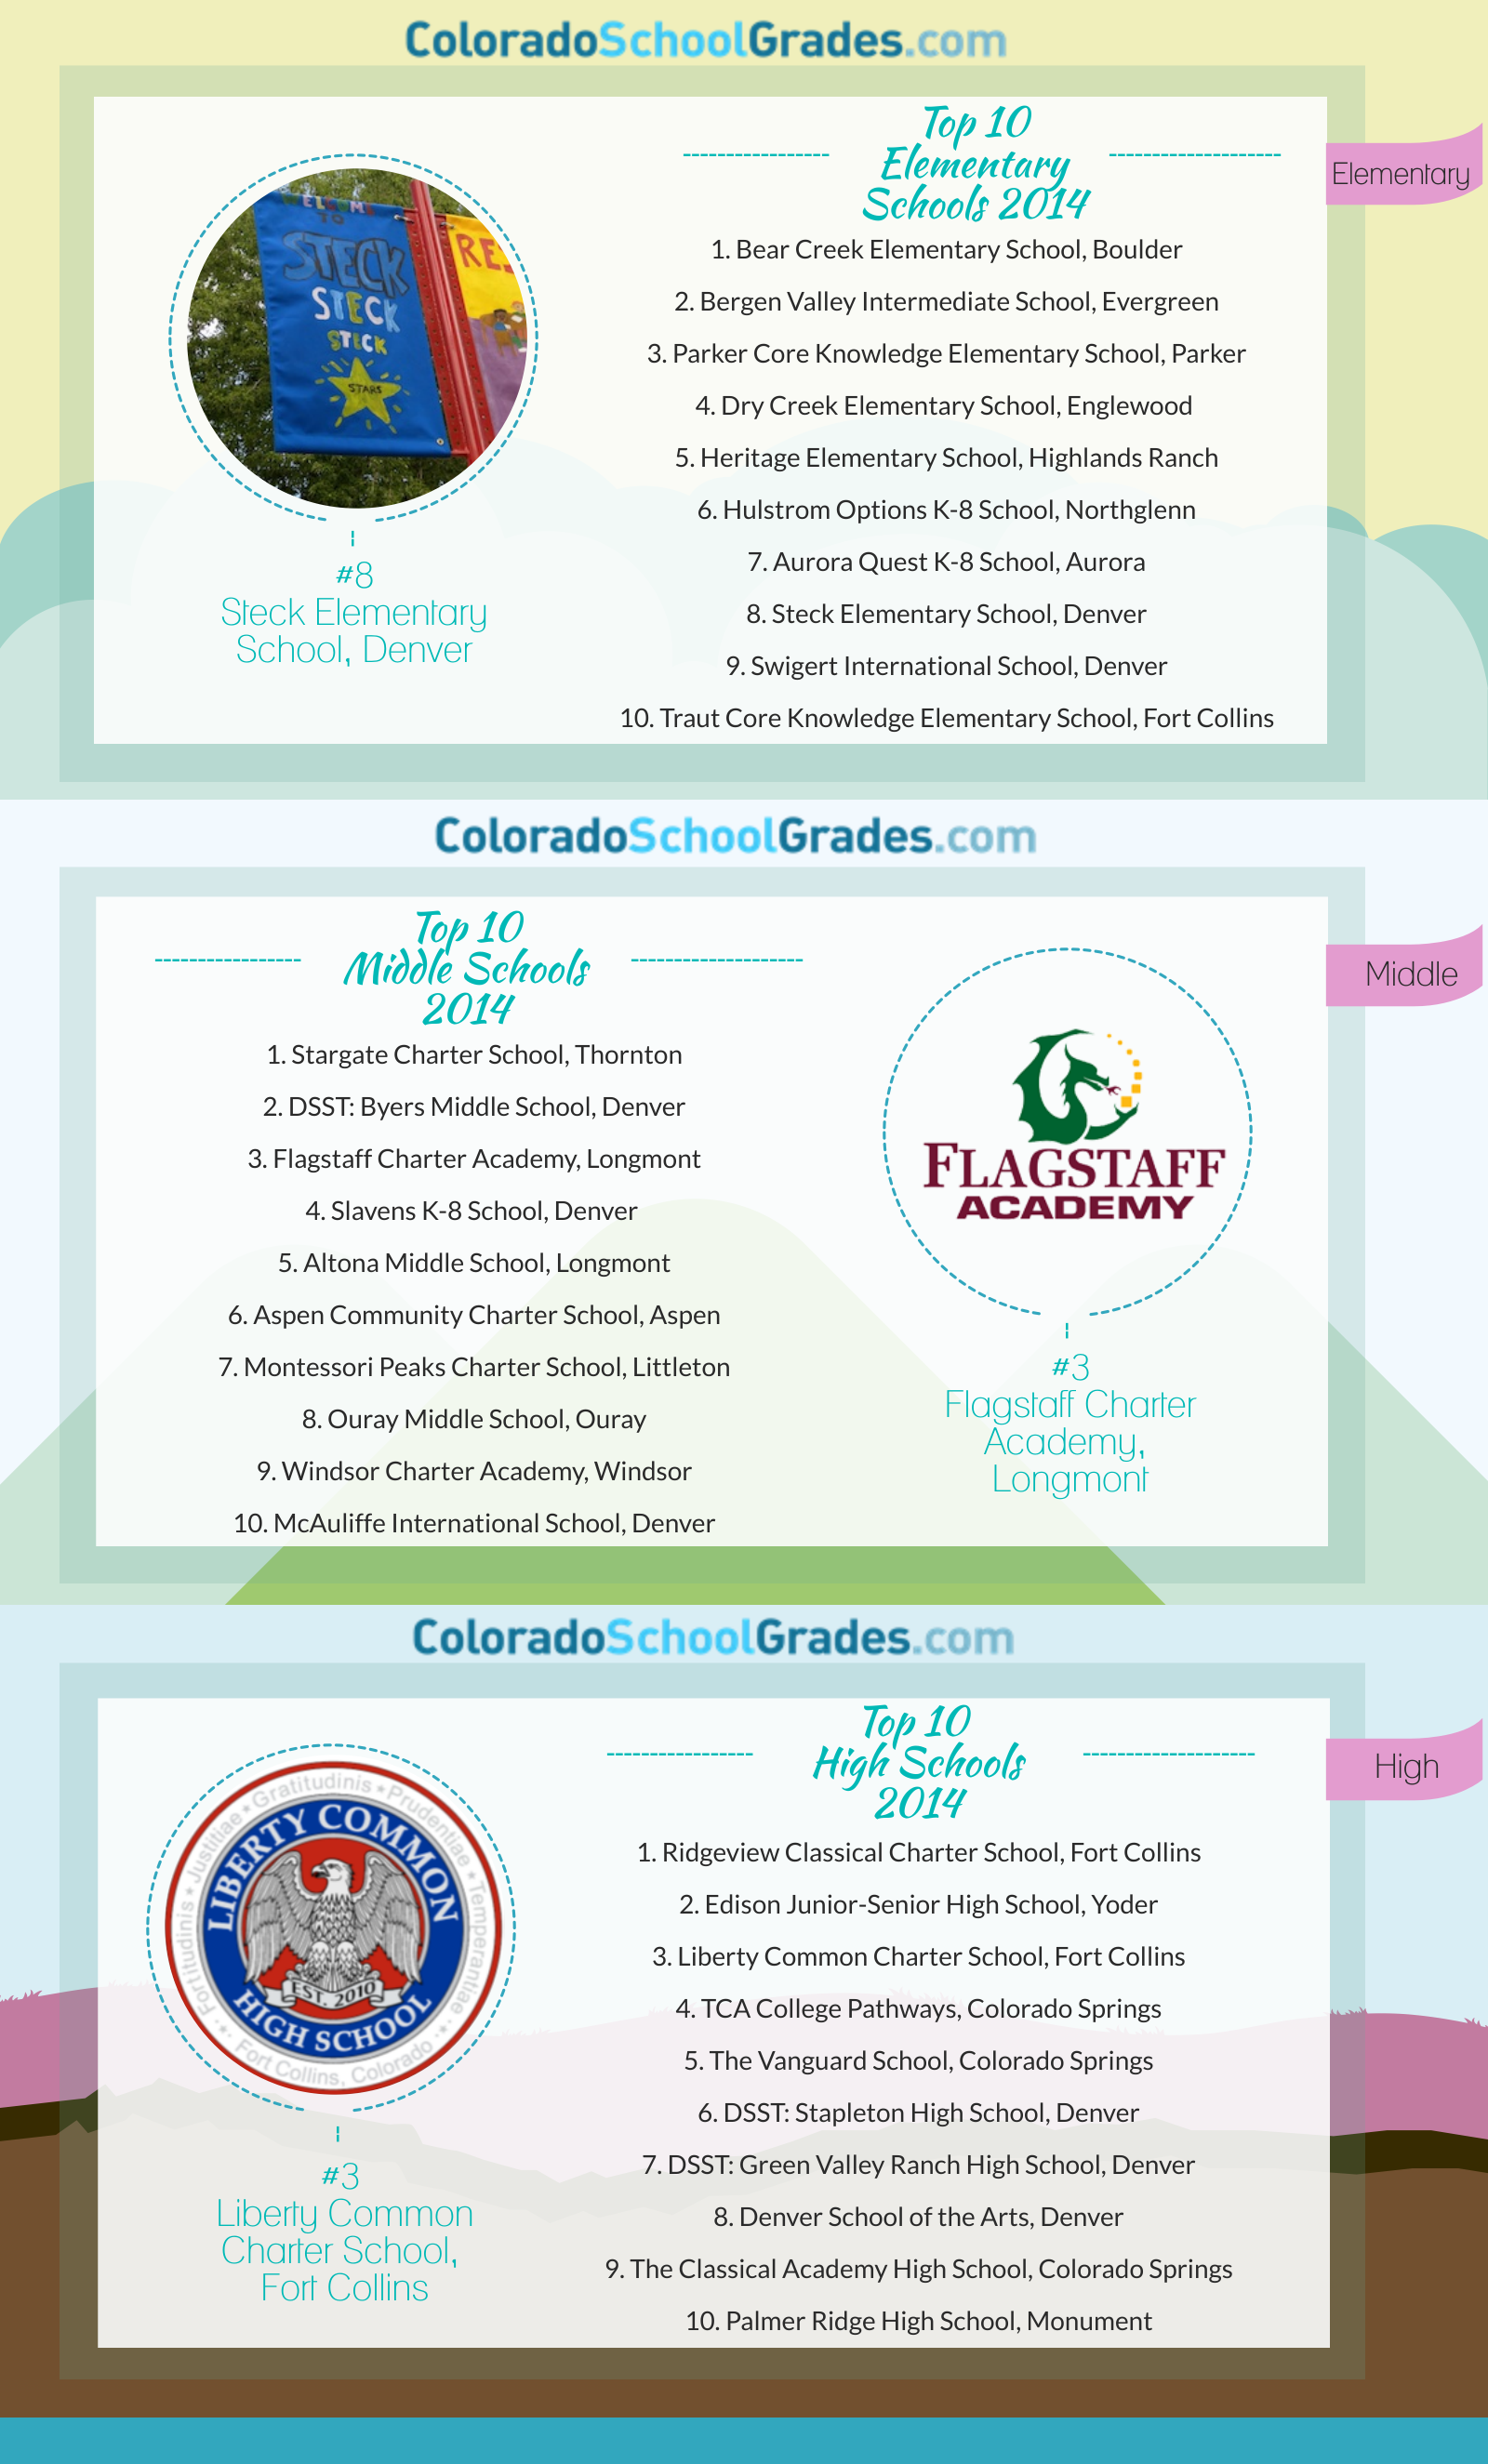 Colorado School Grades Top Ten Schools 2014